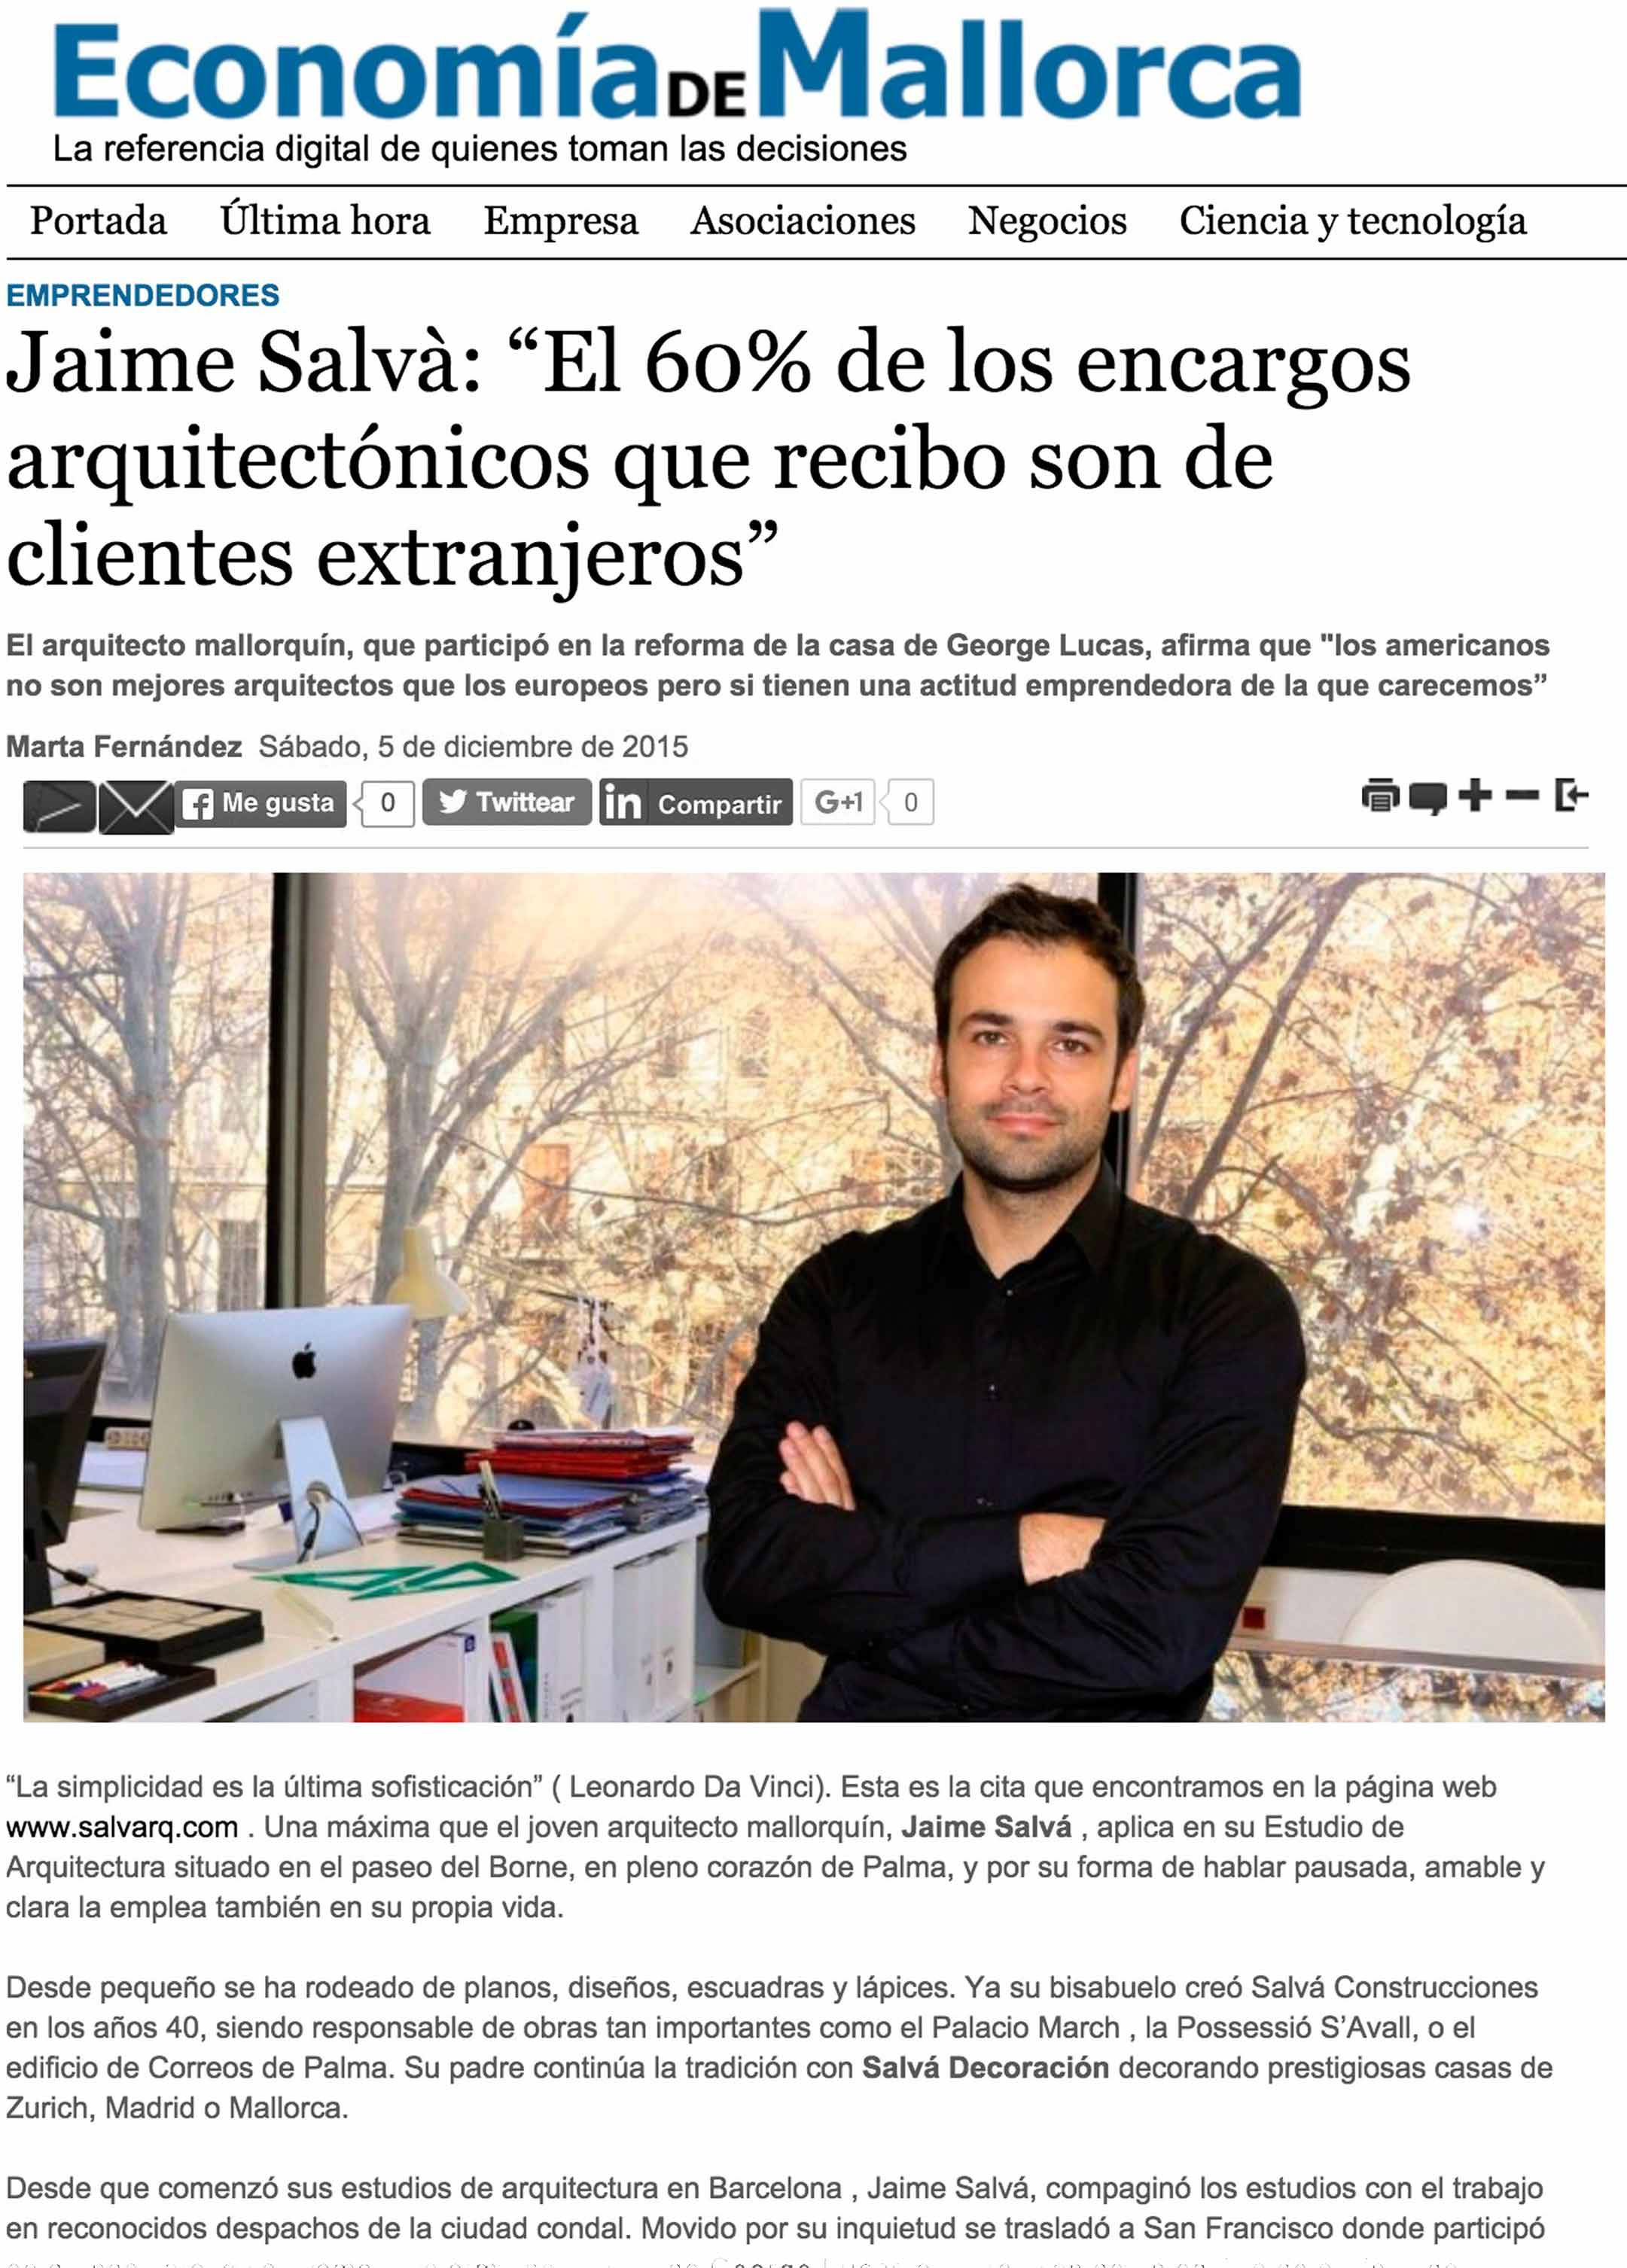 Entrevista en Economía de Mallorca